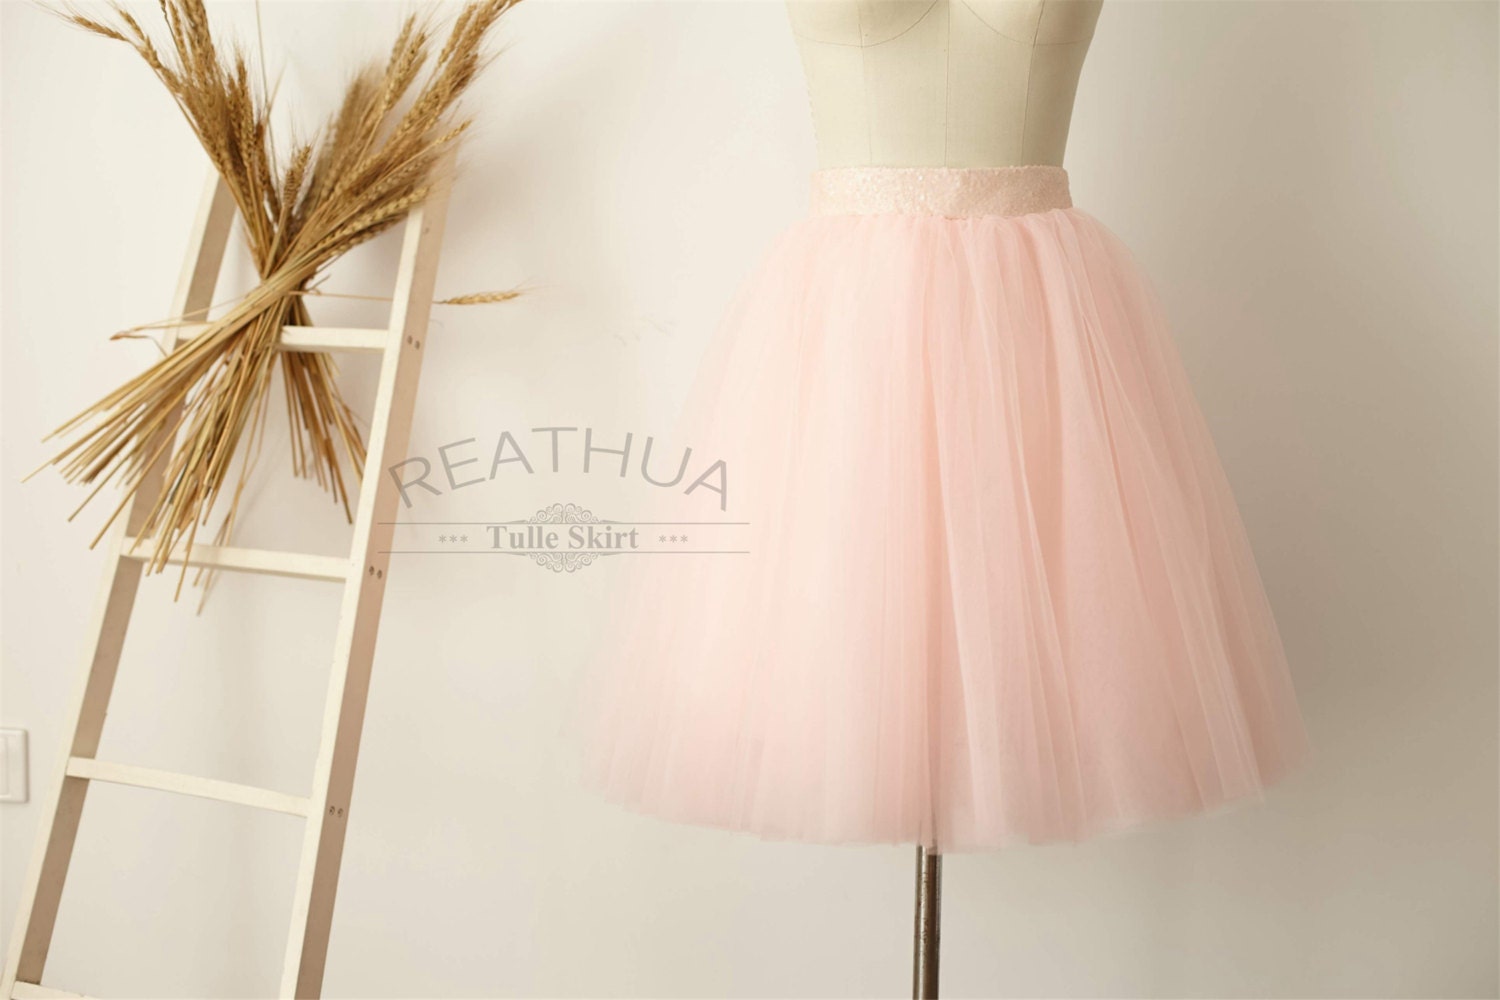 Blush Pink Tulle Skirt/Short Women Sequin Skirt/TUTU Tulle | Etsy